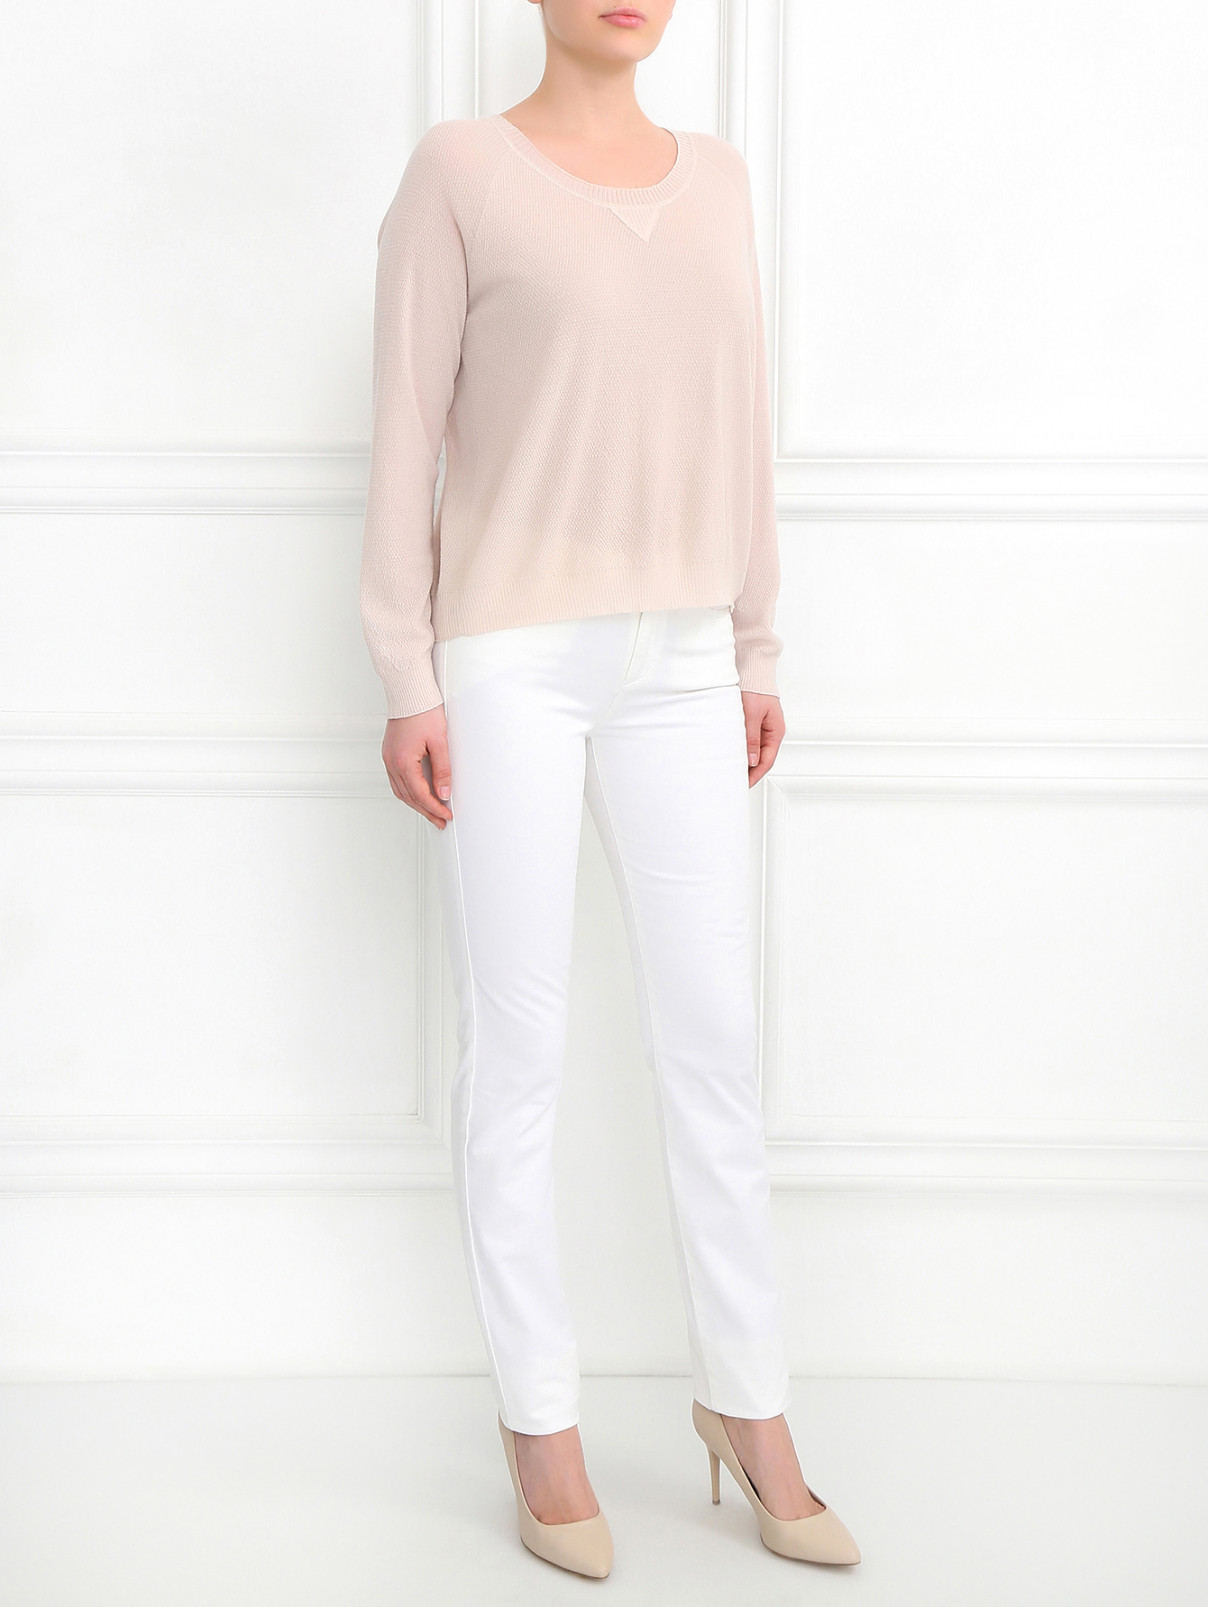 Зауженные брюки из хлопка с боковыми карманами Barbara Bui  –  Модель Общий вид  – Цвет:  Белый